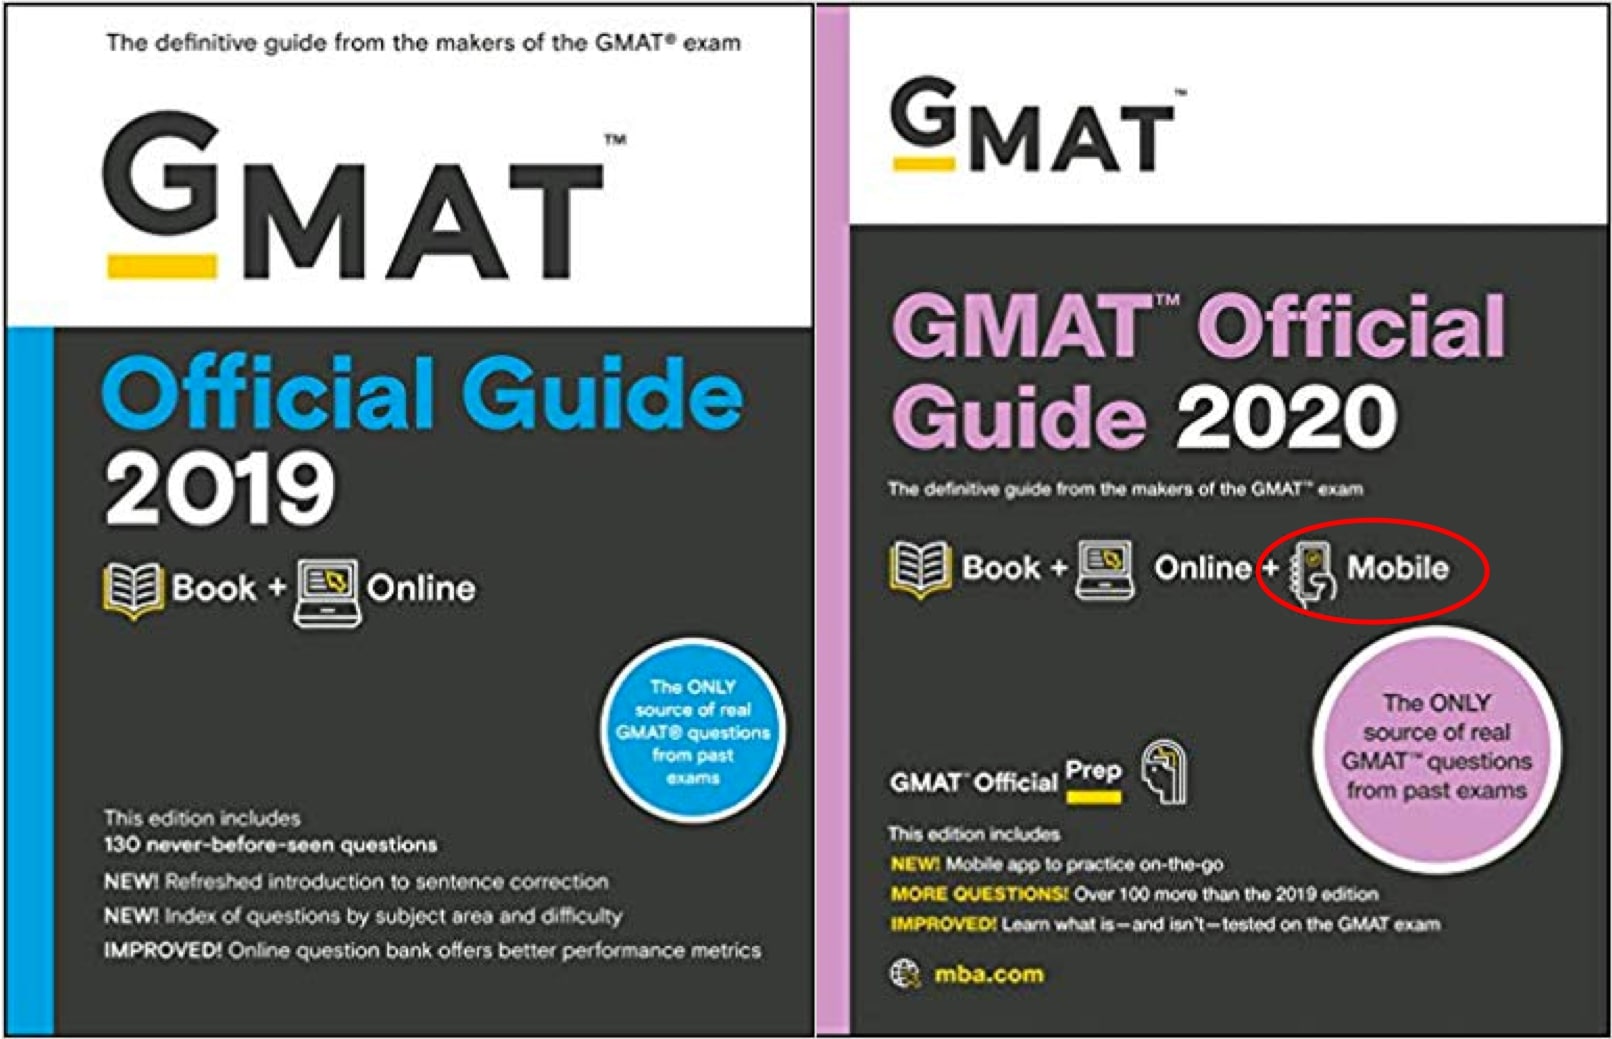 GMAT Official Guide 2020 vs GMAT OG 2019